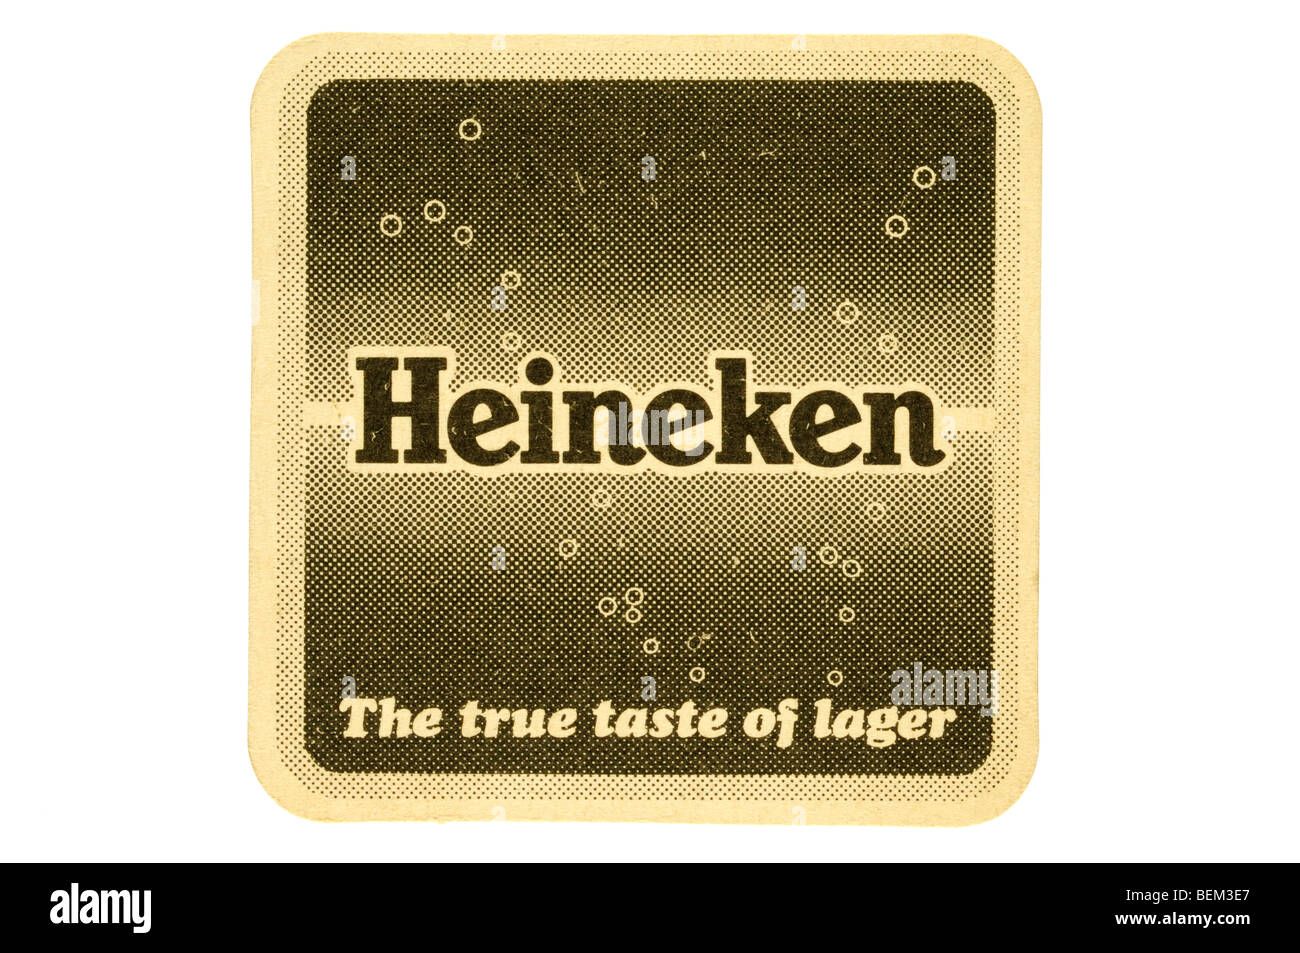 heineken the true taste of lager Stock Photo